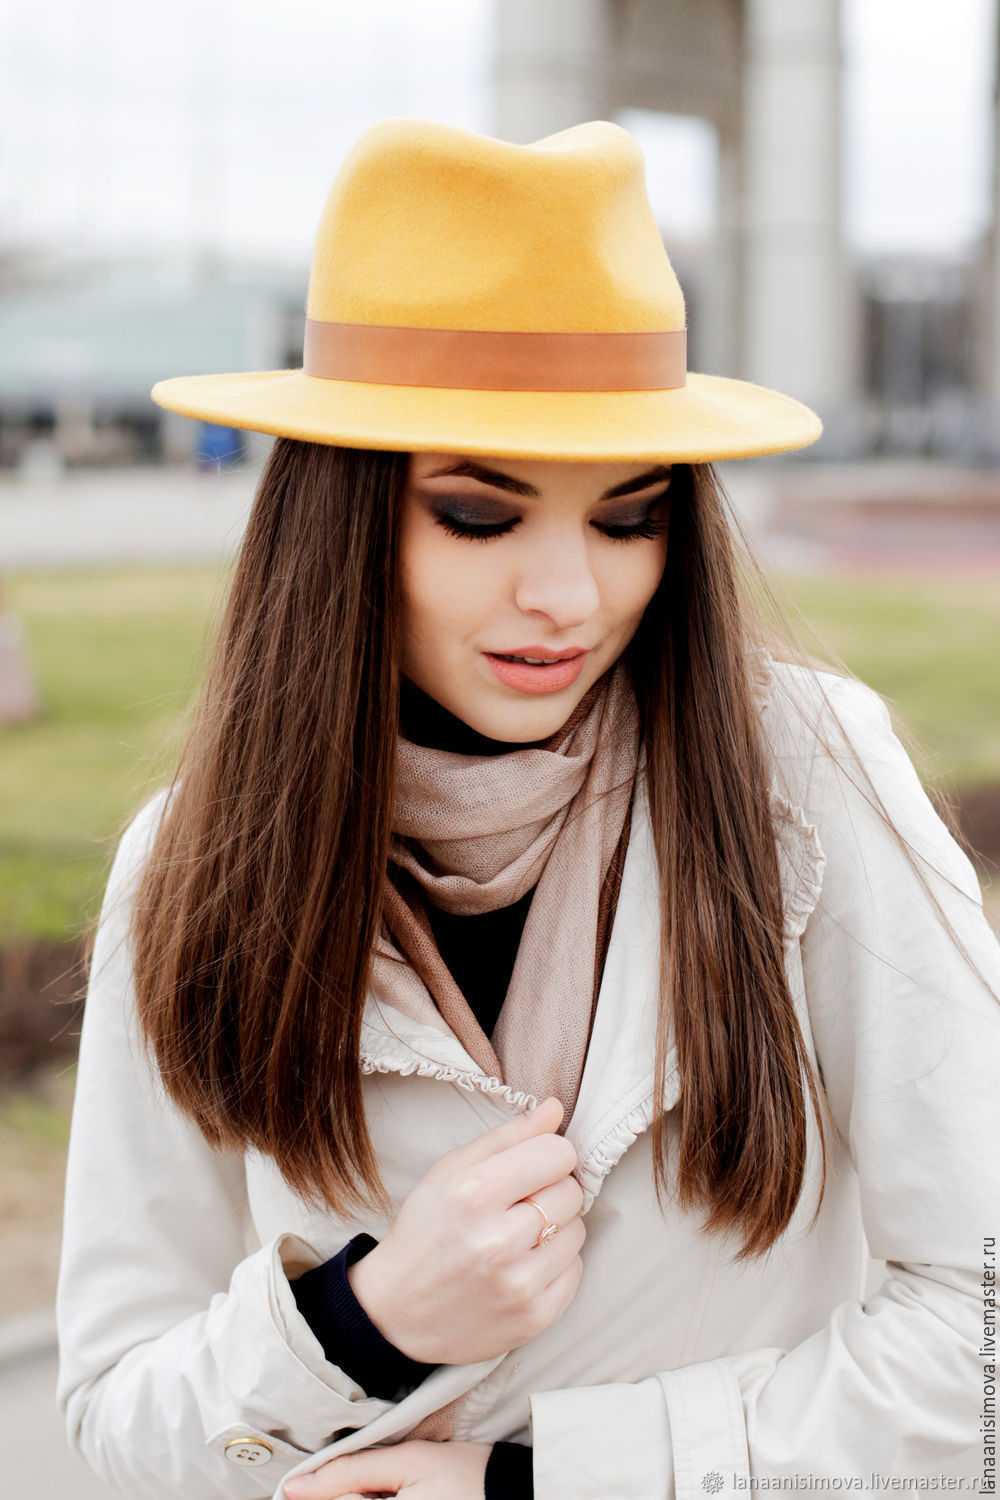 Как носить шляпу правильно в 2019 году: фото - с чем носить широкополые модели
как и с чем в 2019 году носить женскую шляпу правильно и стильно? — modnayadama